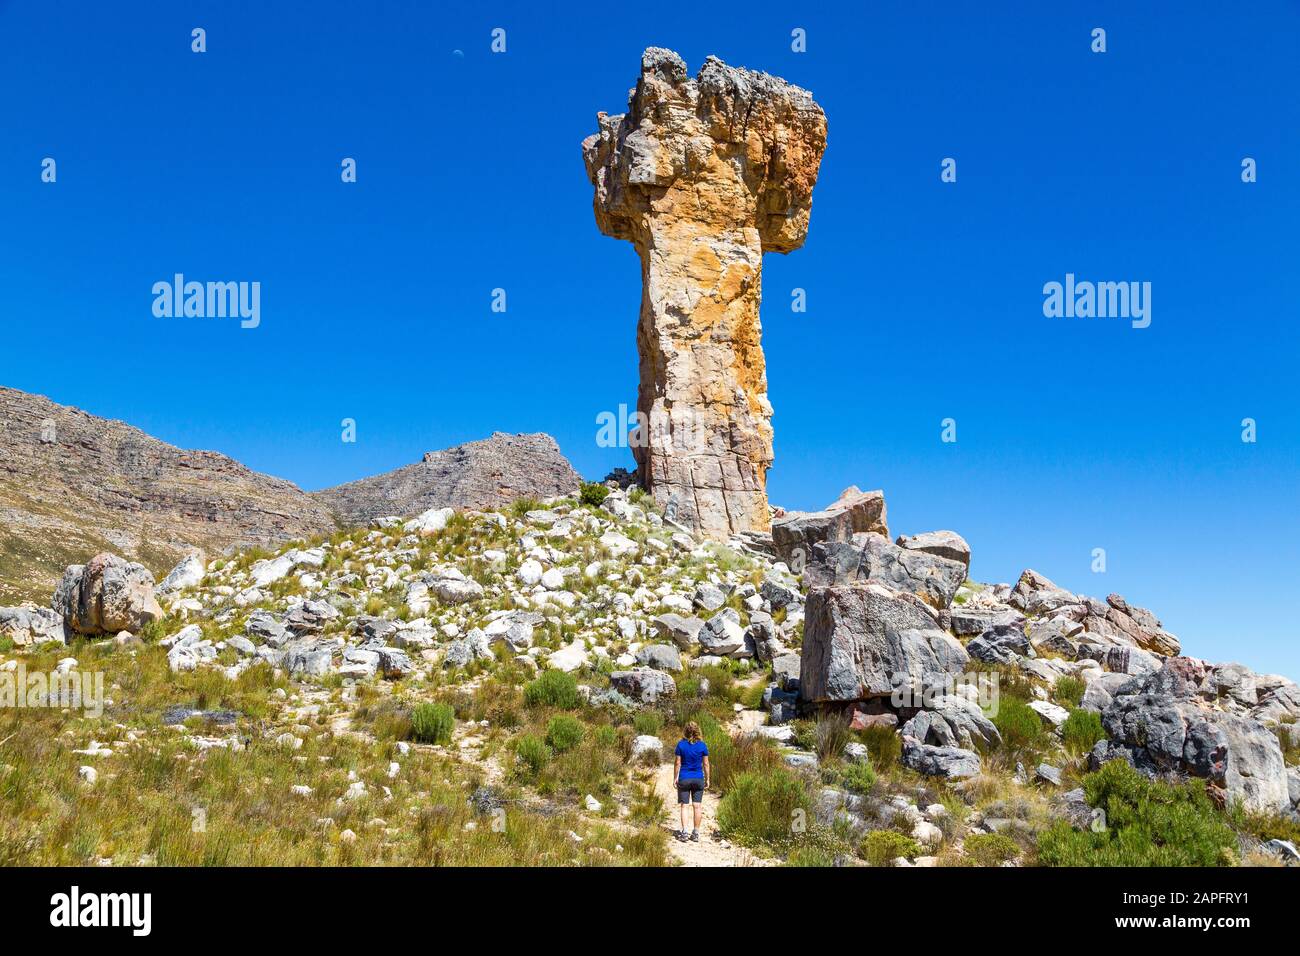 Femme regardant la formation de roches Croix maltaise - une destination populaire de randonnée dans le Cederberg, Afrique du Sud Banque D'Images